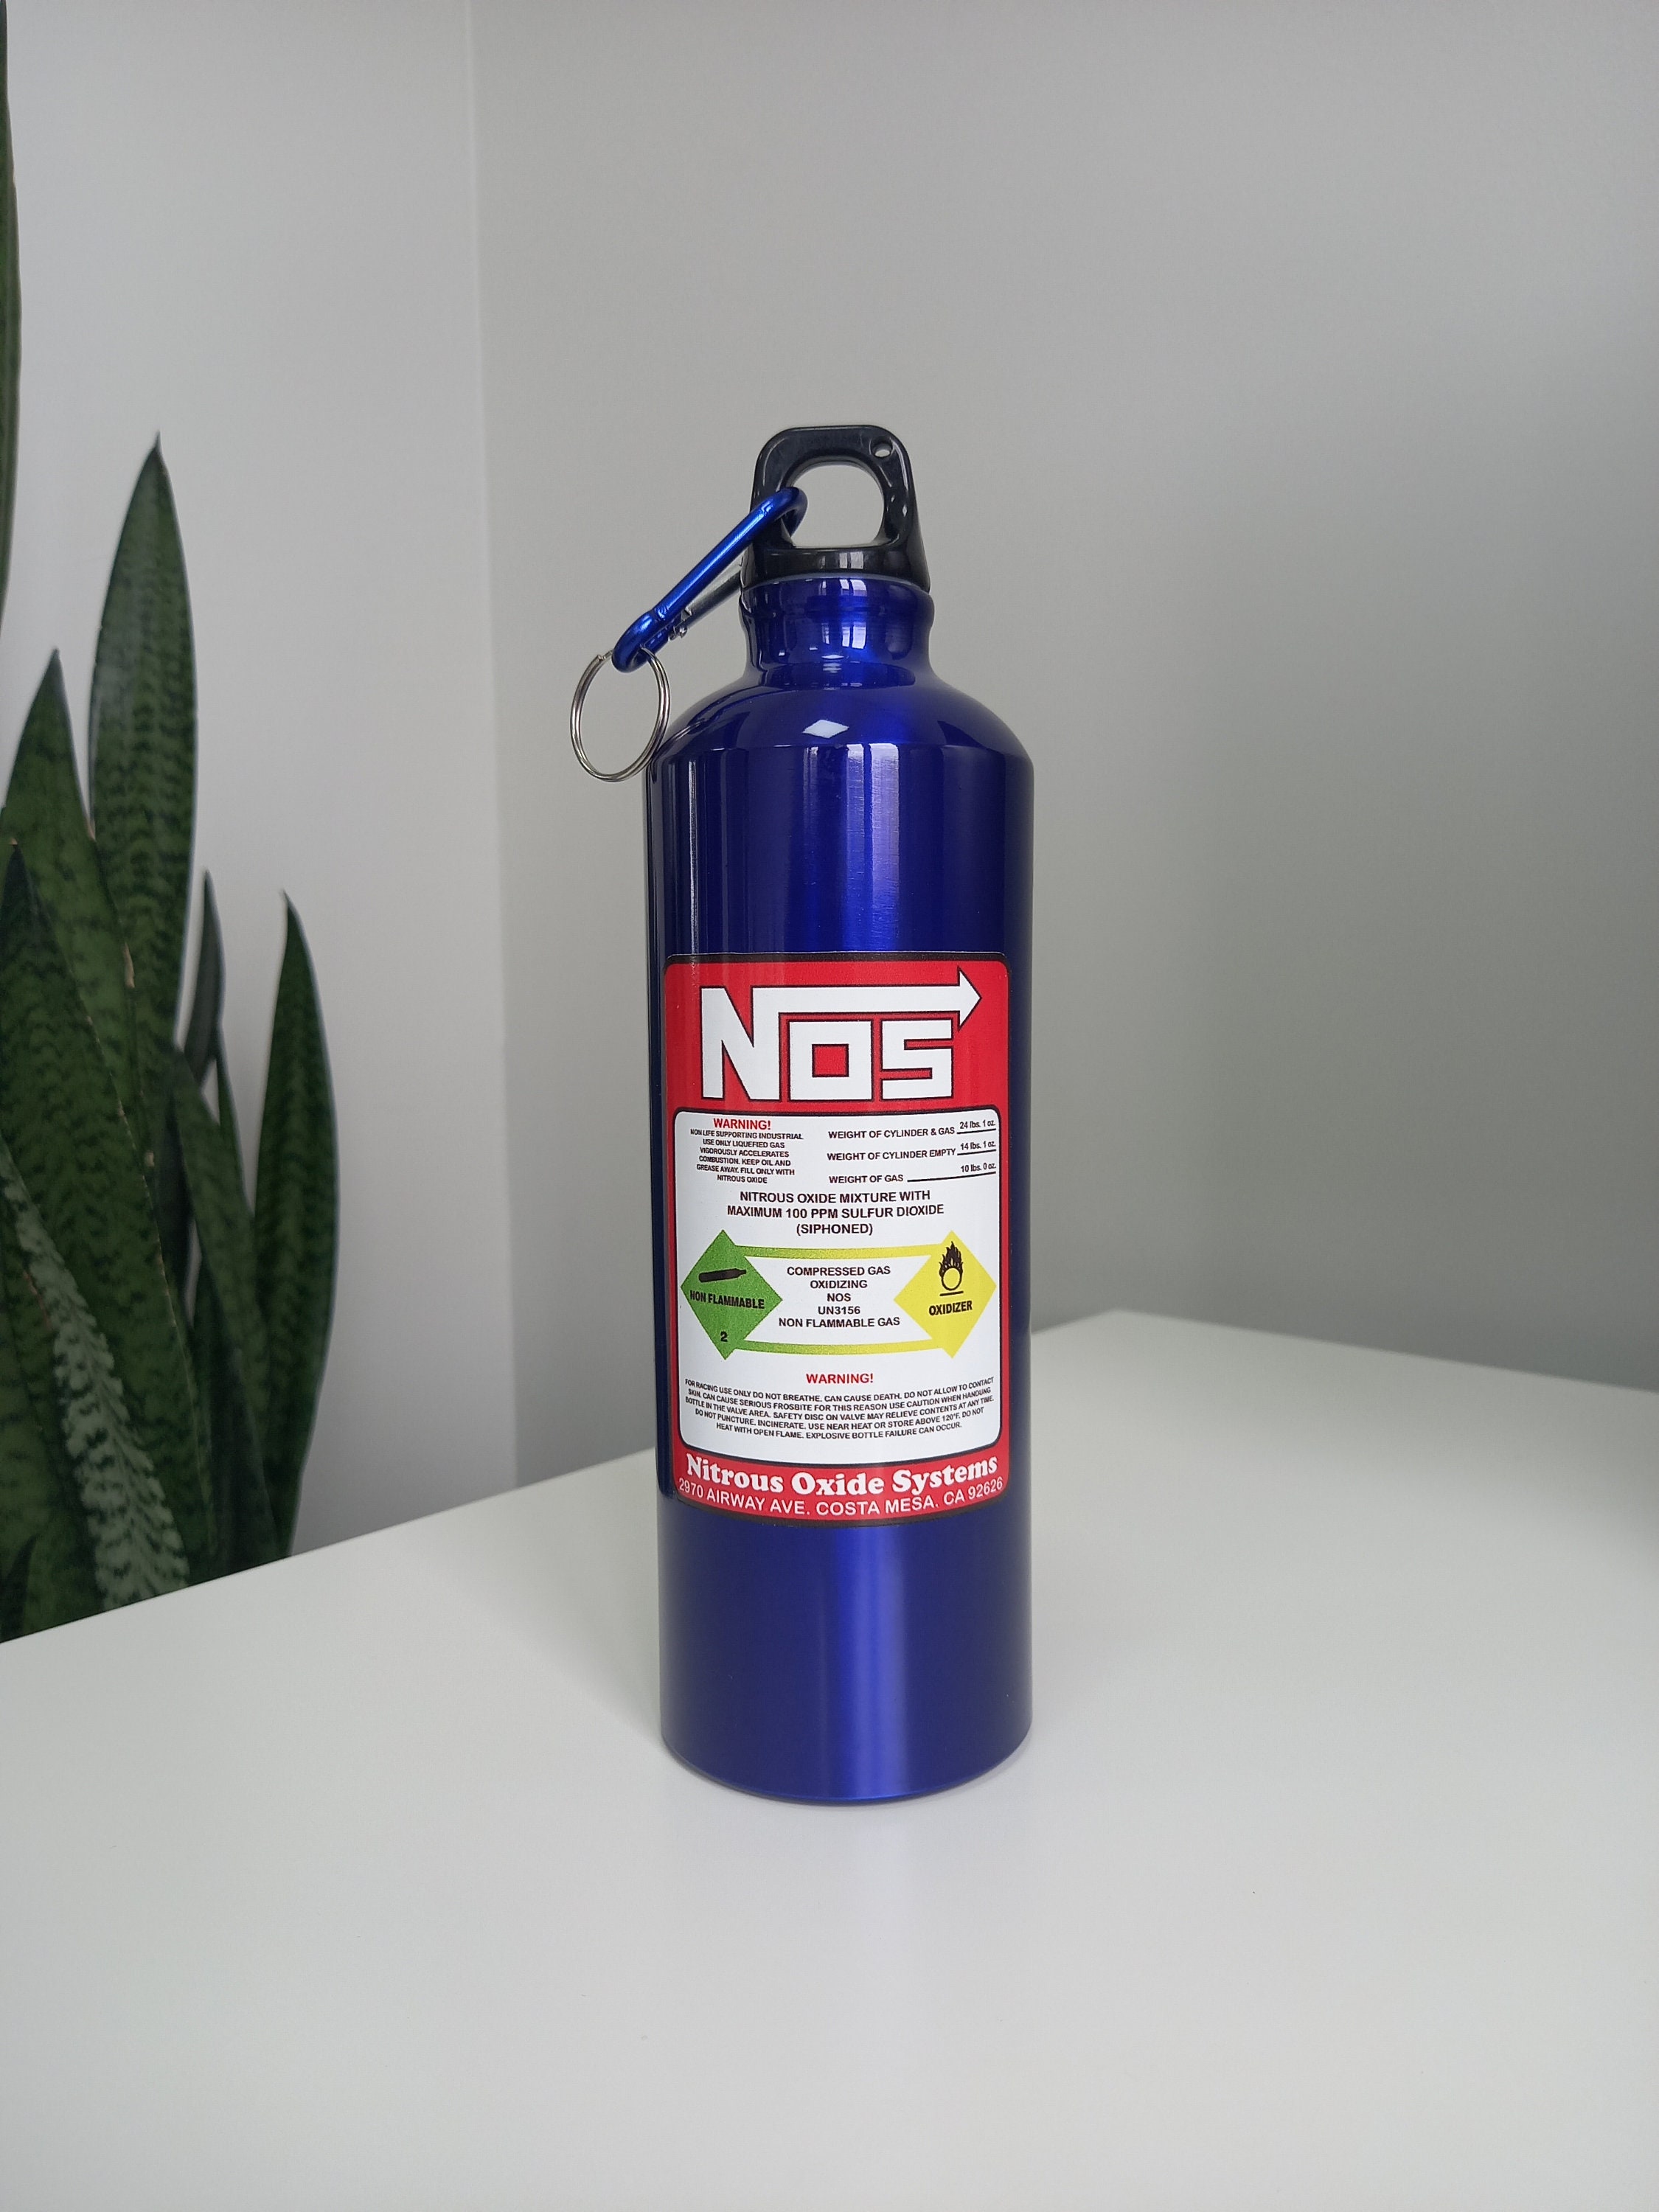 NOS Flasche Nitrous Oxide System lachgas in Nordrhein-Westfalen